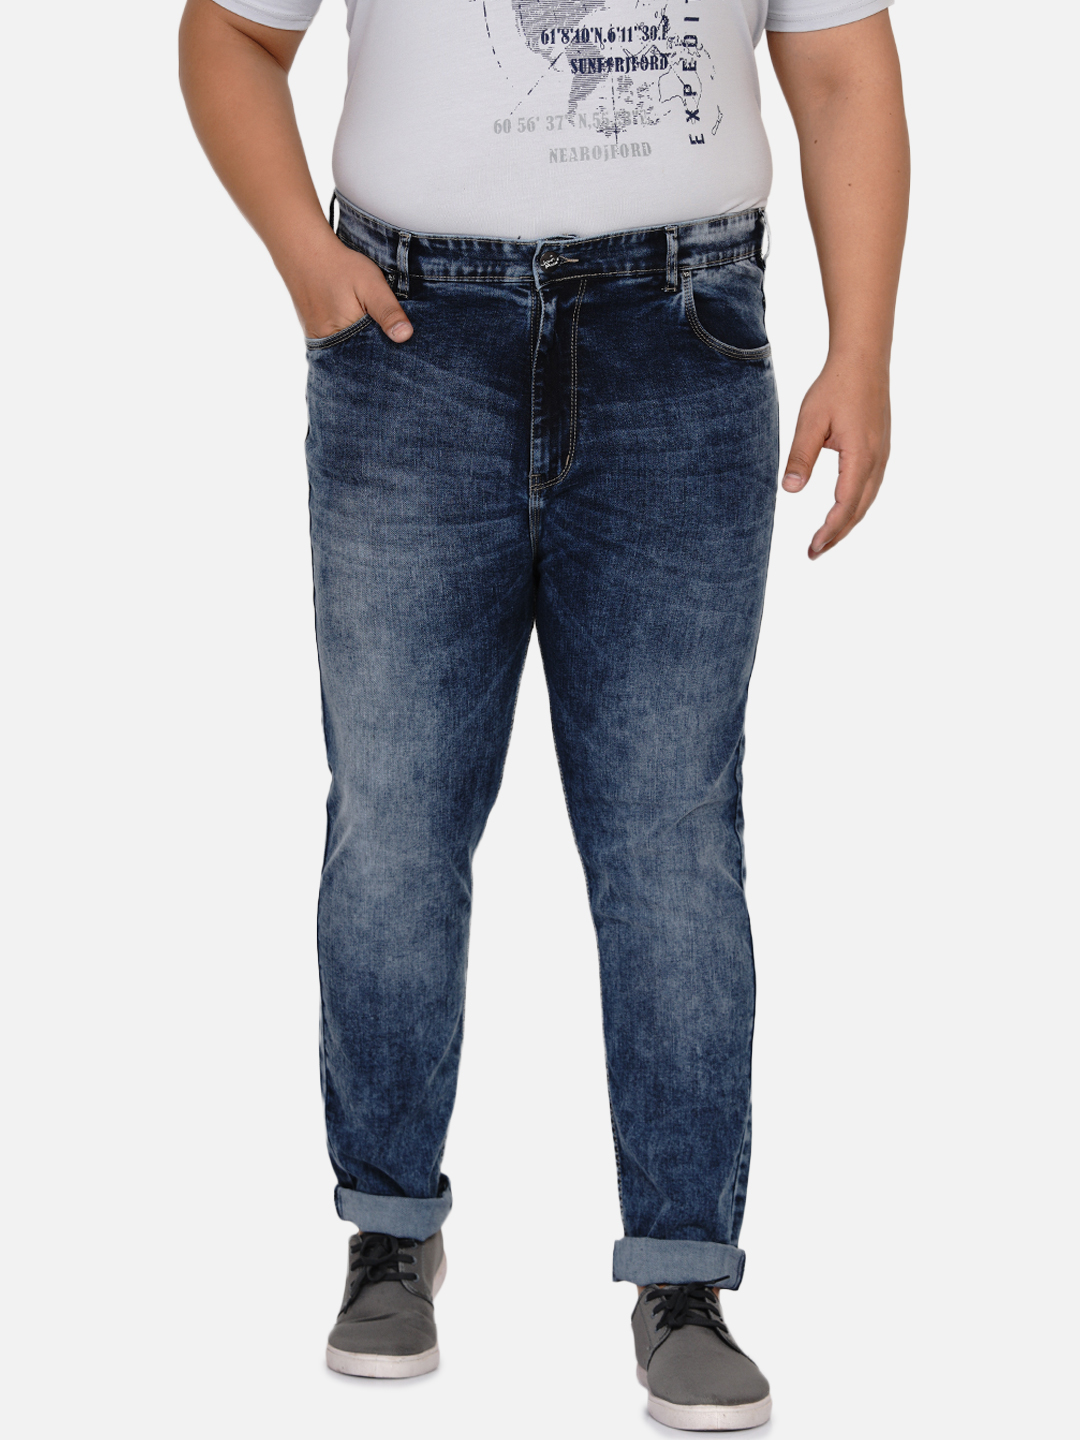 affordables/jeans/EJPJ25001/ejpj25001-3.jpg